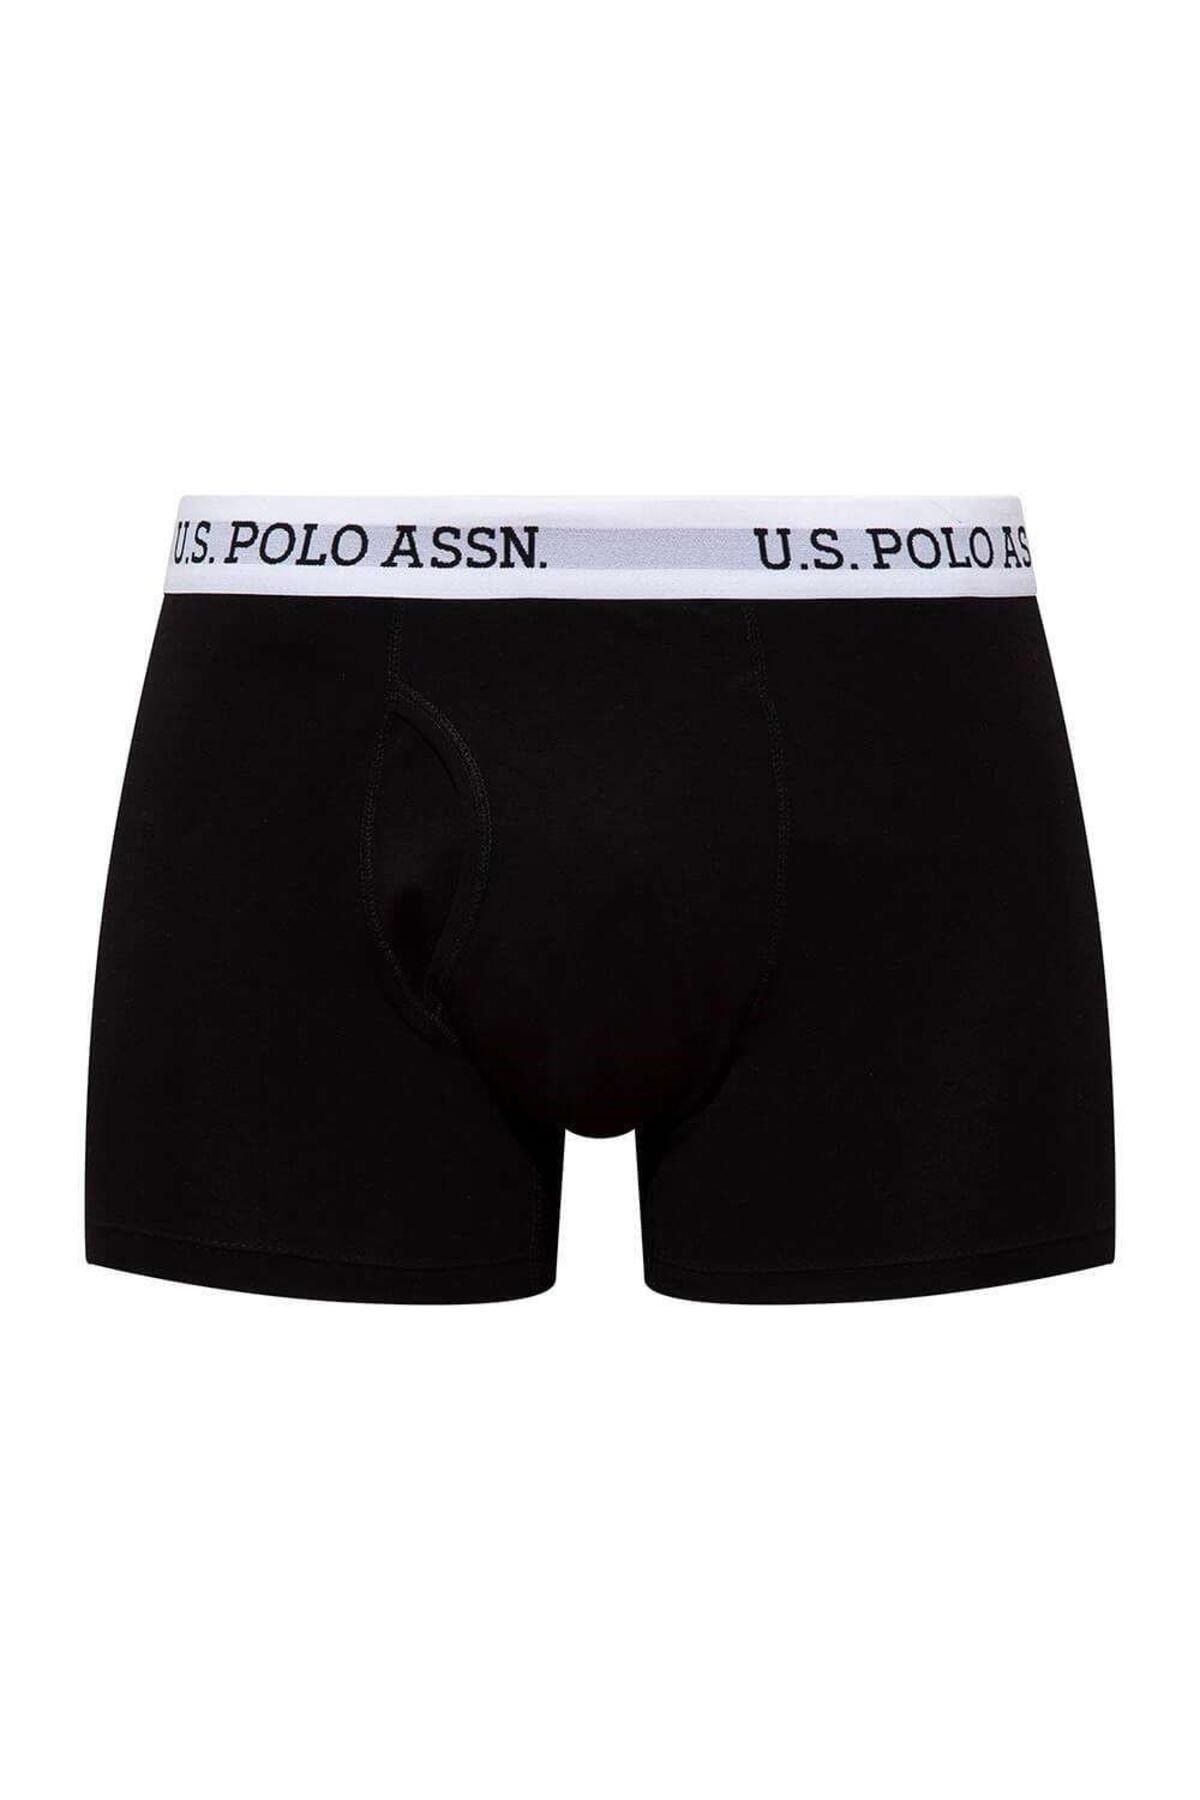 U.S. Polo Assn. U.S. Polo Assn. 80451 Erkek Siyah Tekli Cepli Boxer